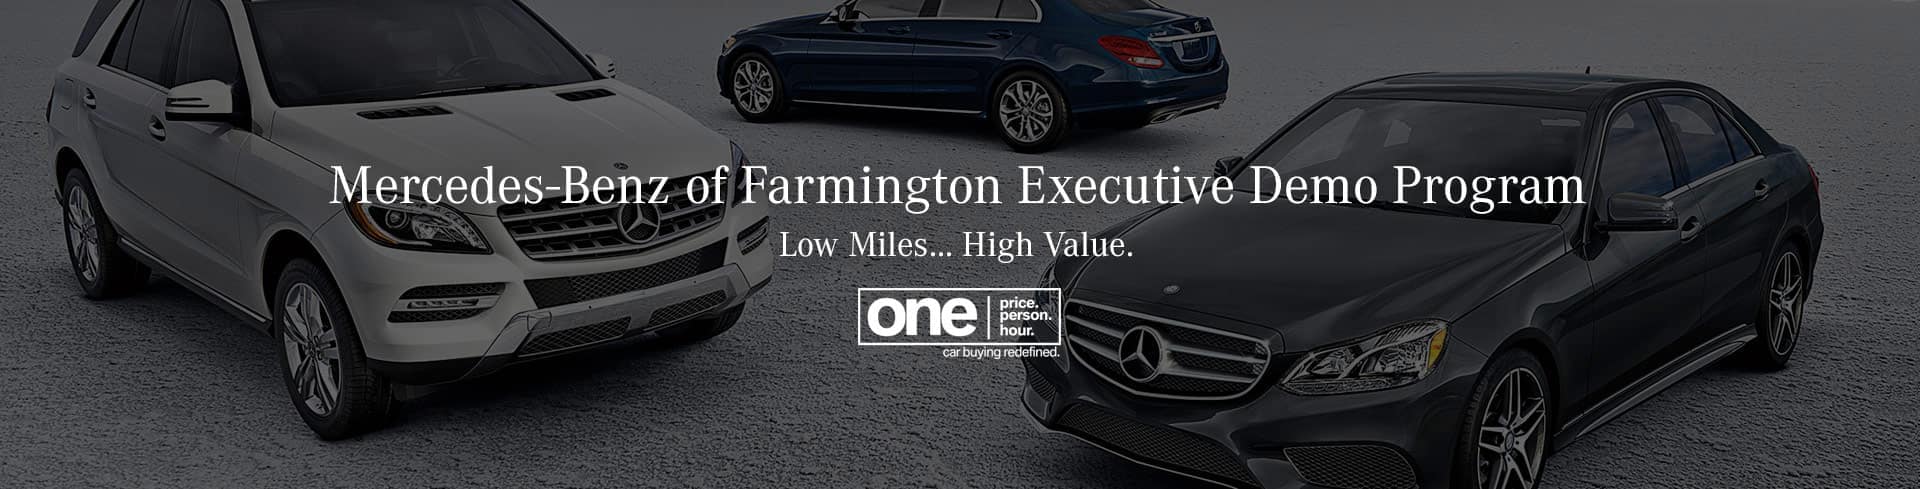 Executive Demo Program Mercedes Benz Of Farmington